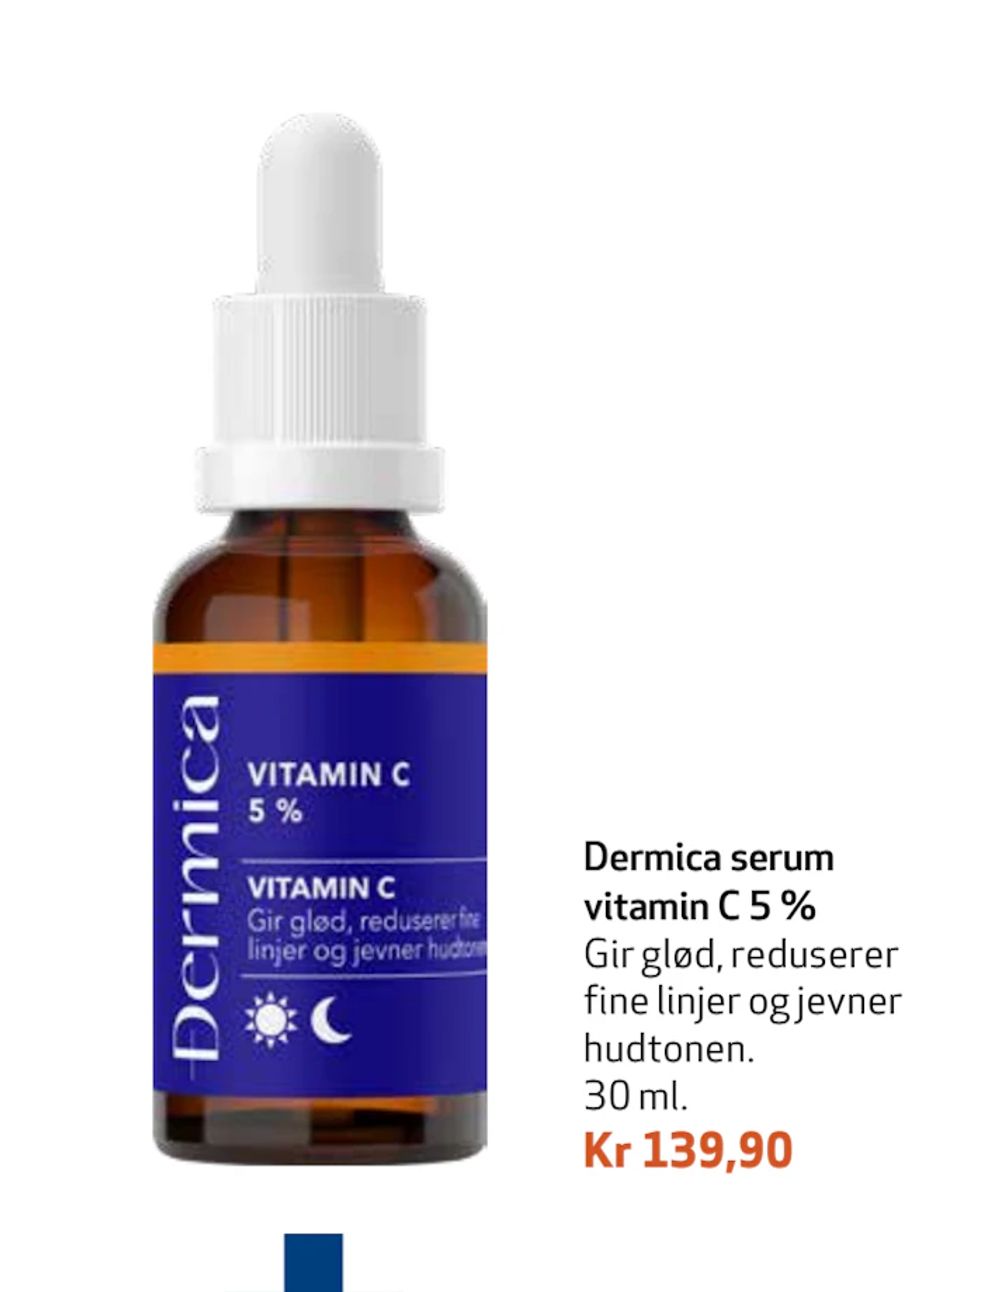 Tilbud på Dermica serum vitamin C 5 % fra Apotek 1 til 139,90 kr